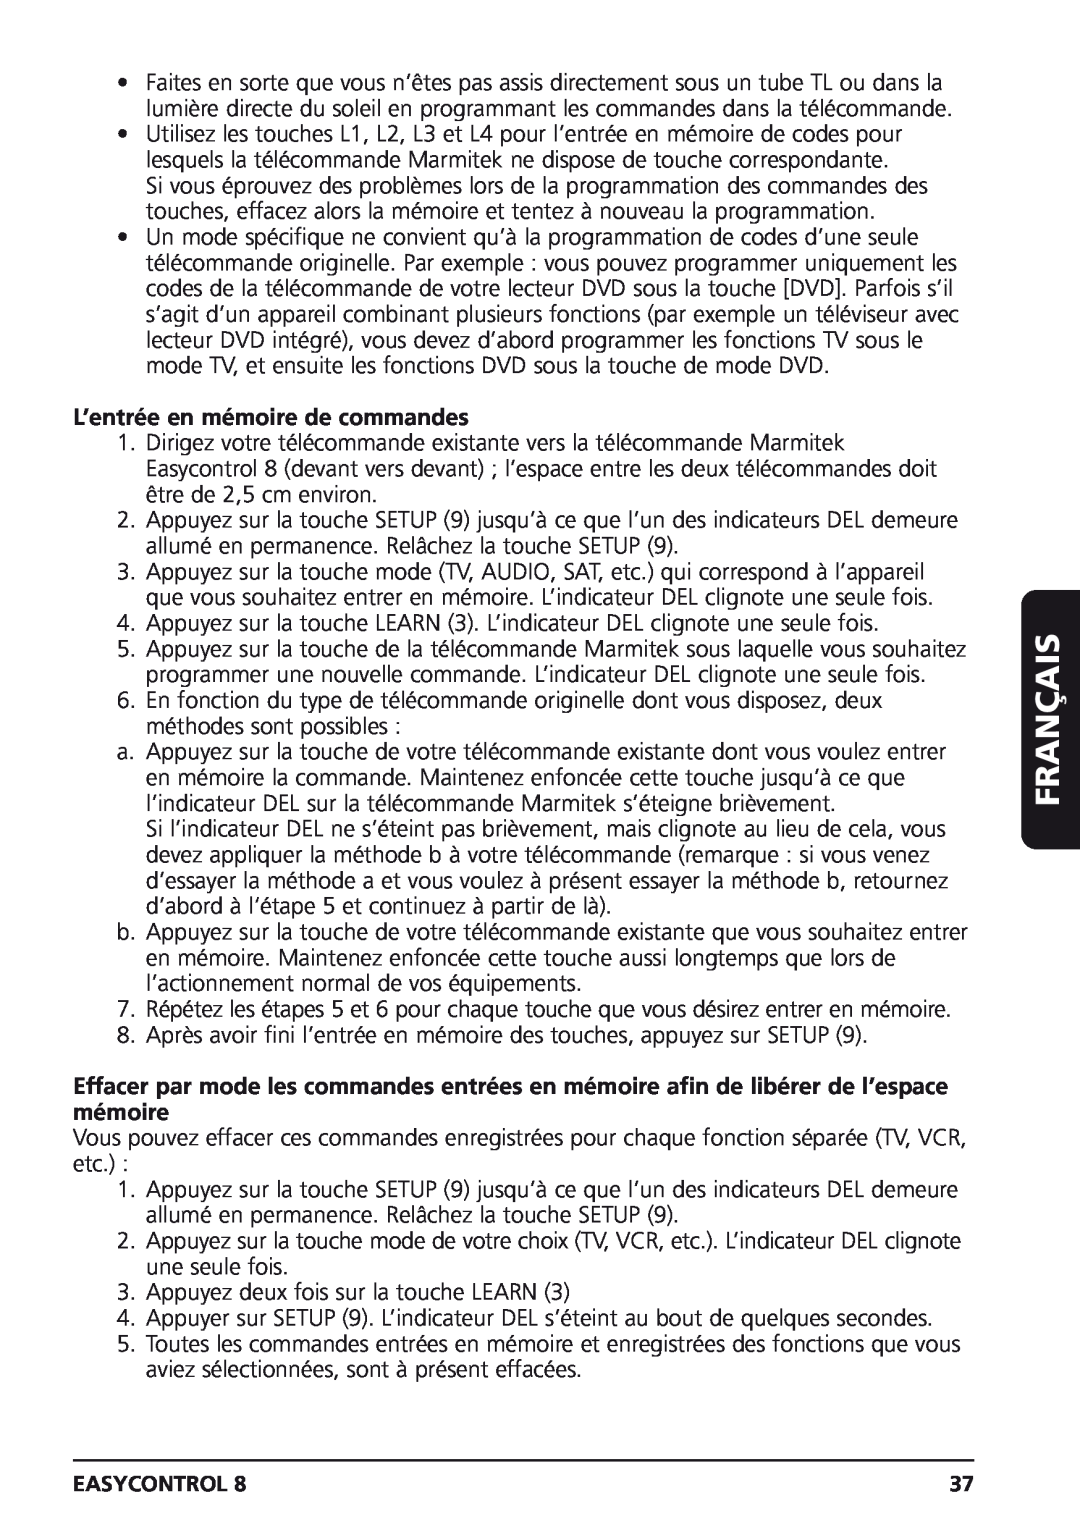 Marmitek Easycontrol 8 owner manual L’entrée en mémoire de commandes, Français 